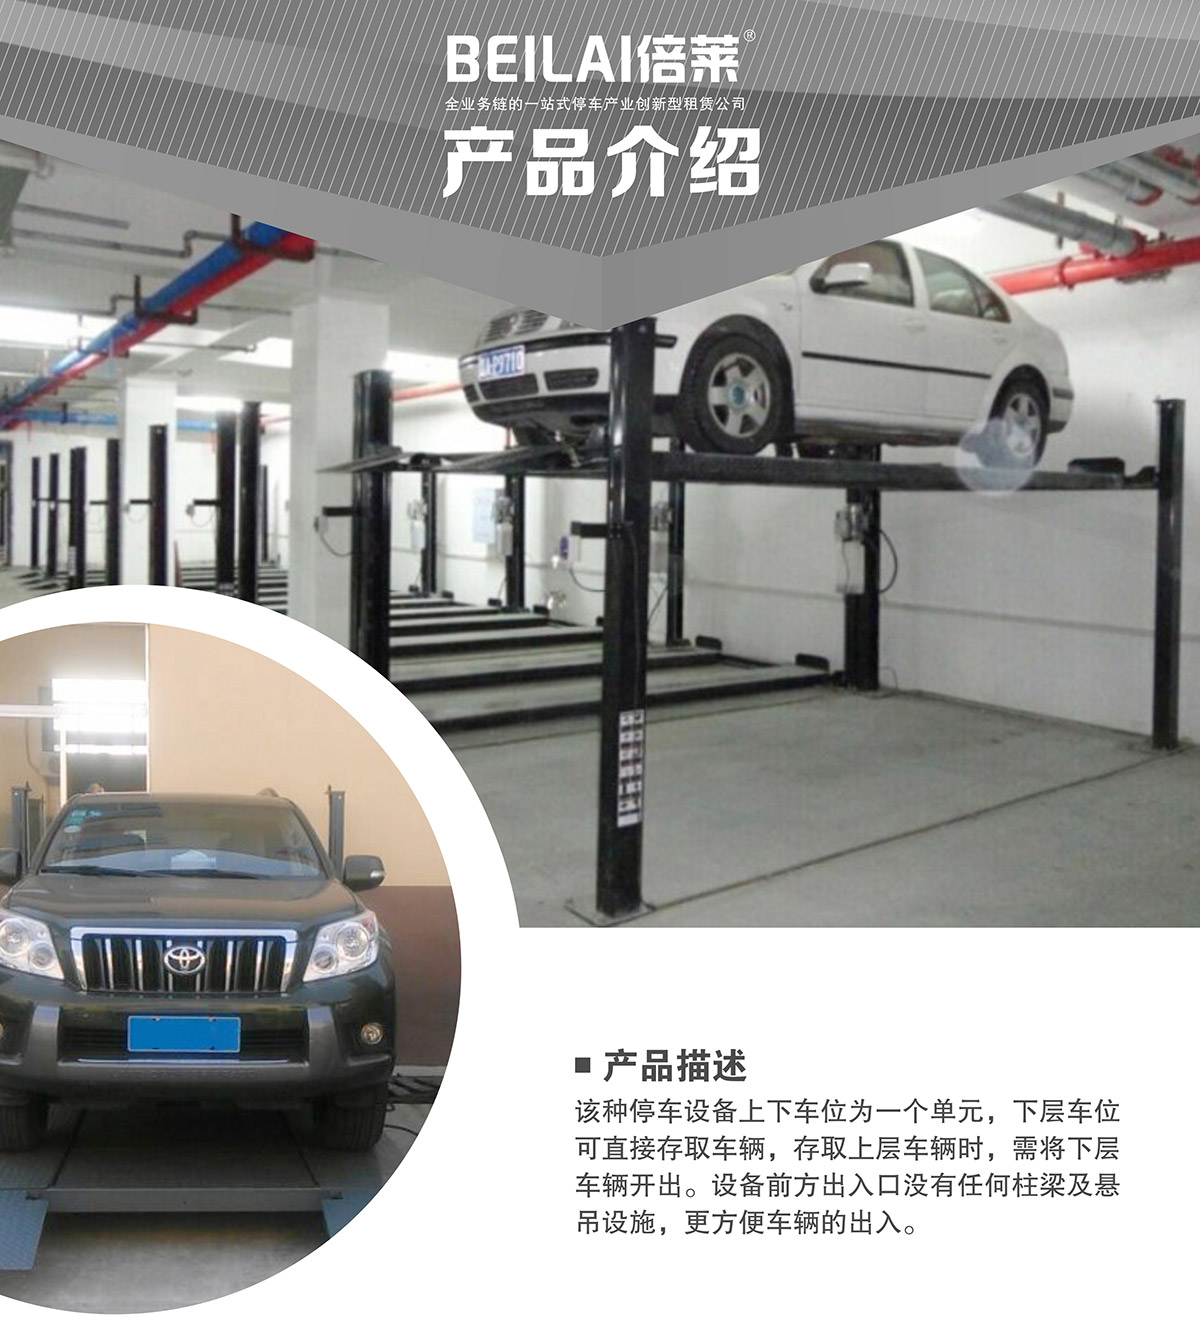 贵州四柱简易升降立体停车设备产品介绍.jpg